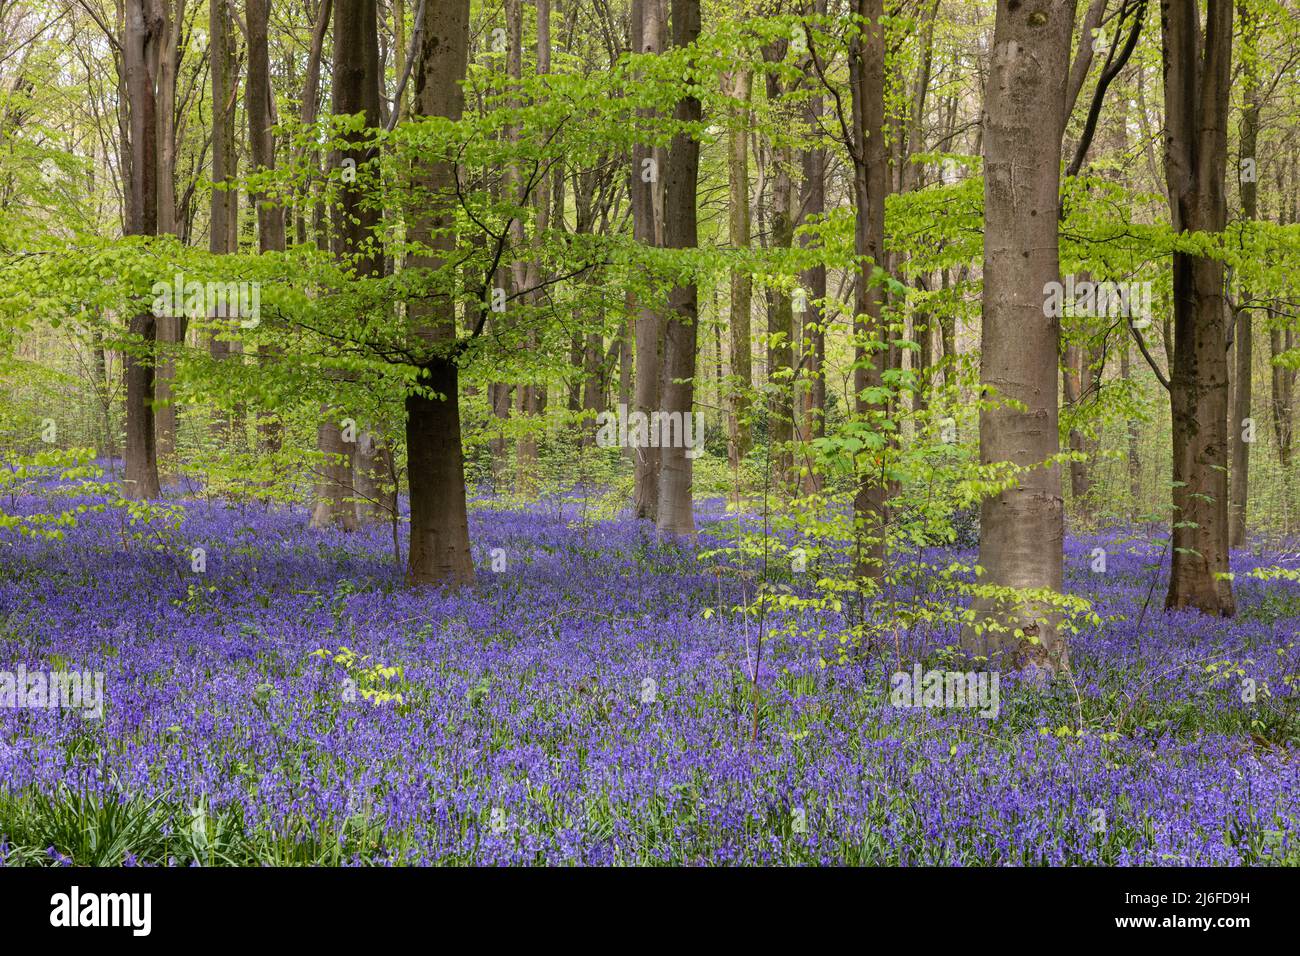 Tapis de Spring Bluebells - jacinthoides non scripta à West Woods bluebell Wood, près de Marlborough, Wiltshire, Angleterre, Royaume-Uni Banque D'Images